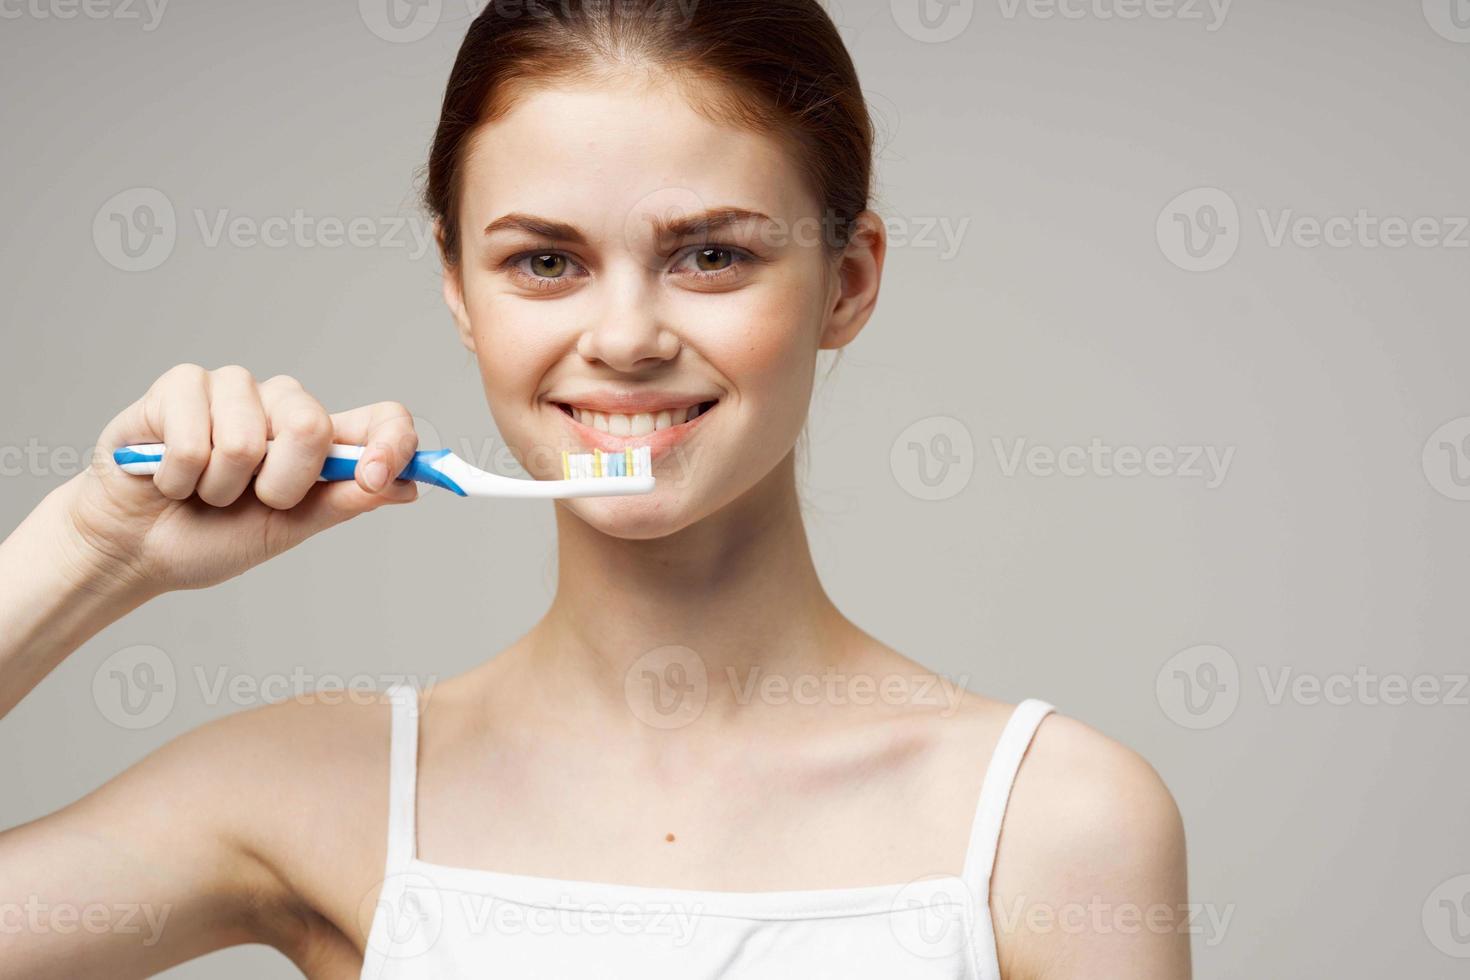 jolie femme dentifrice brossage les dents dentaire santé lumière Contexte photo